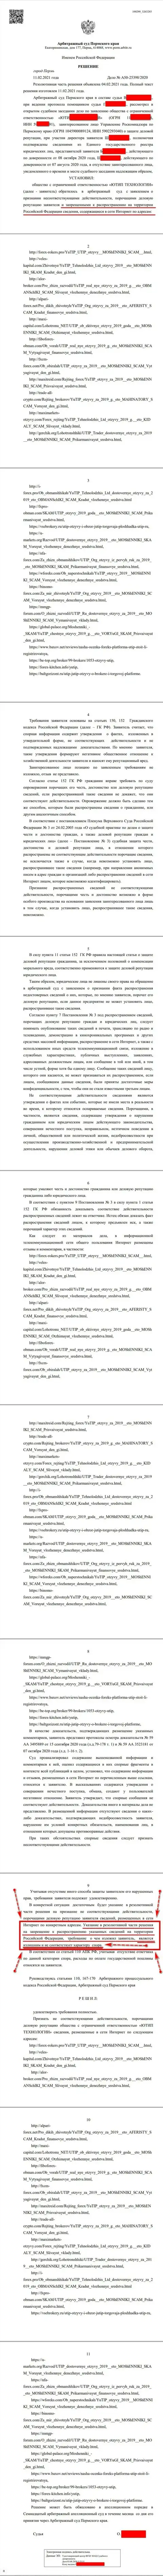 Решение Арбитражного суда по судебному иску обманщиков ЮТИП Ру в отношении портала Форекс-Брокерс Про